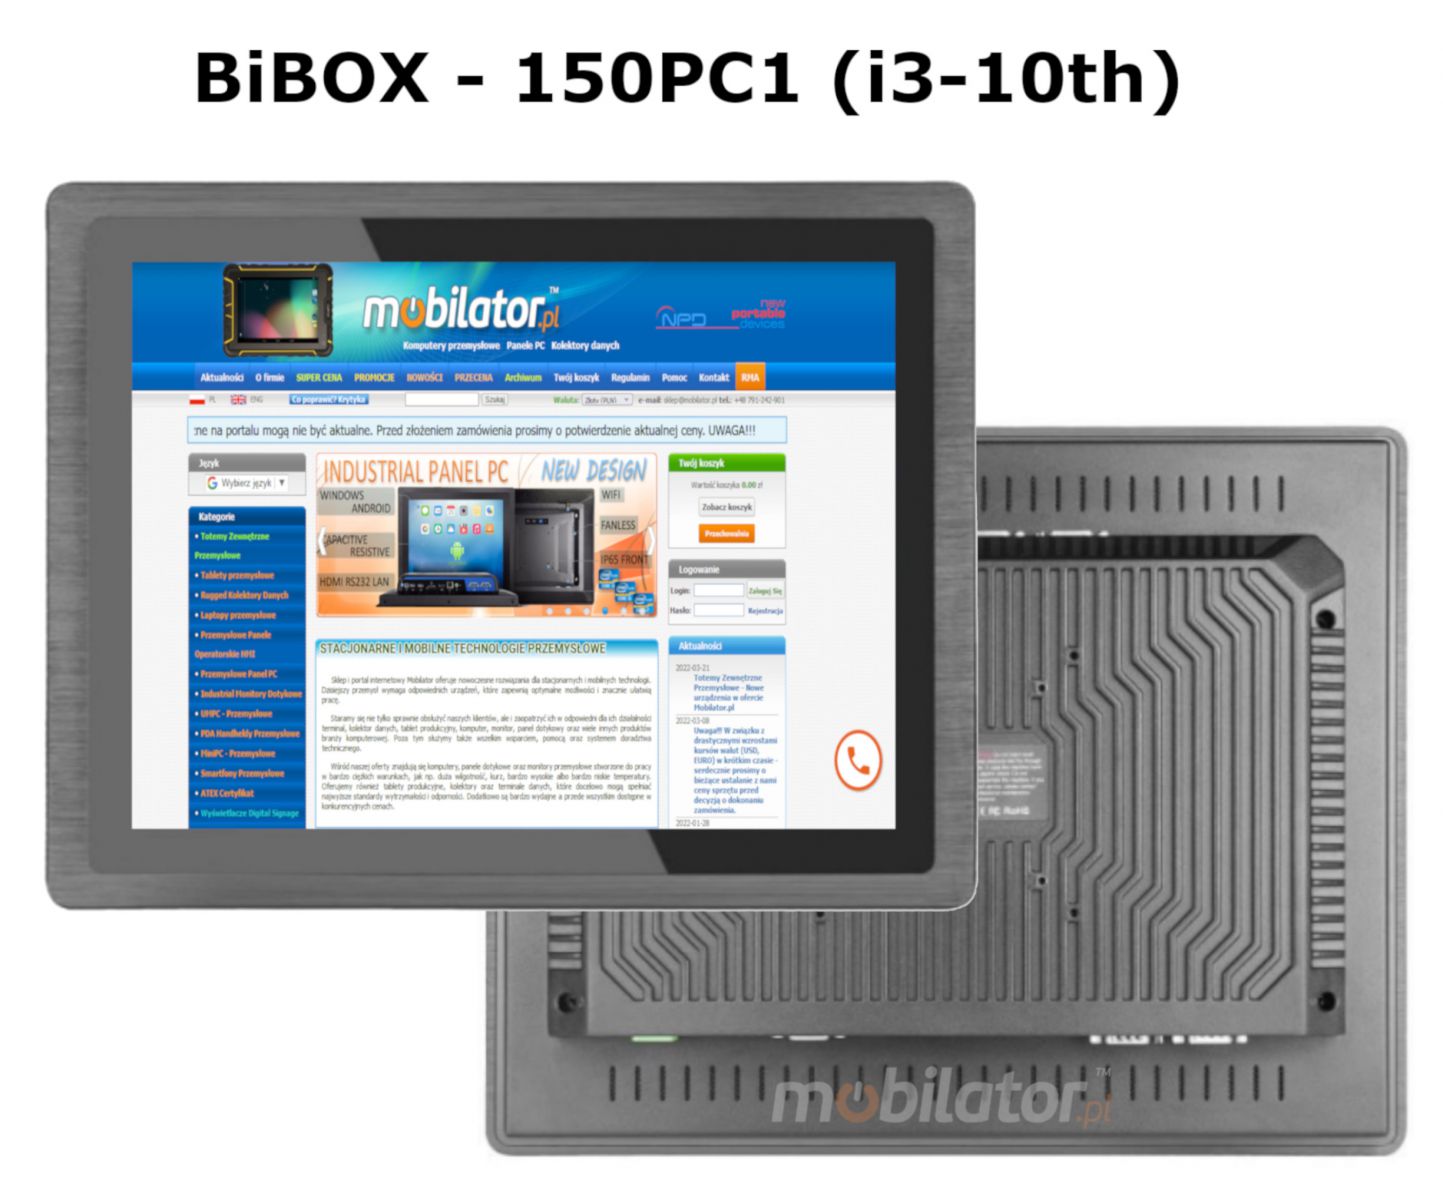 BIBOX-150PC1 odporny dobry wydajny komputer panelowy